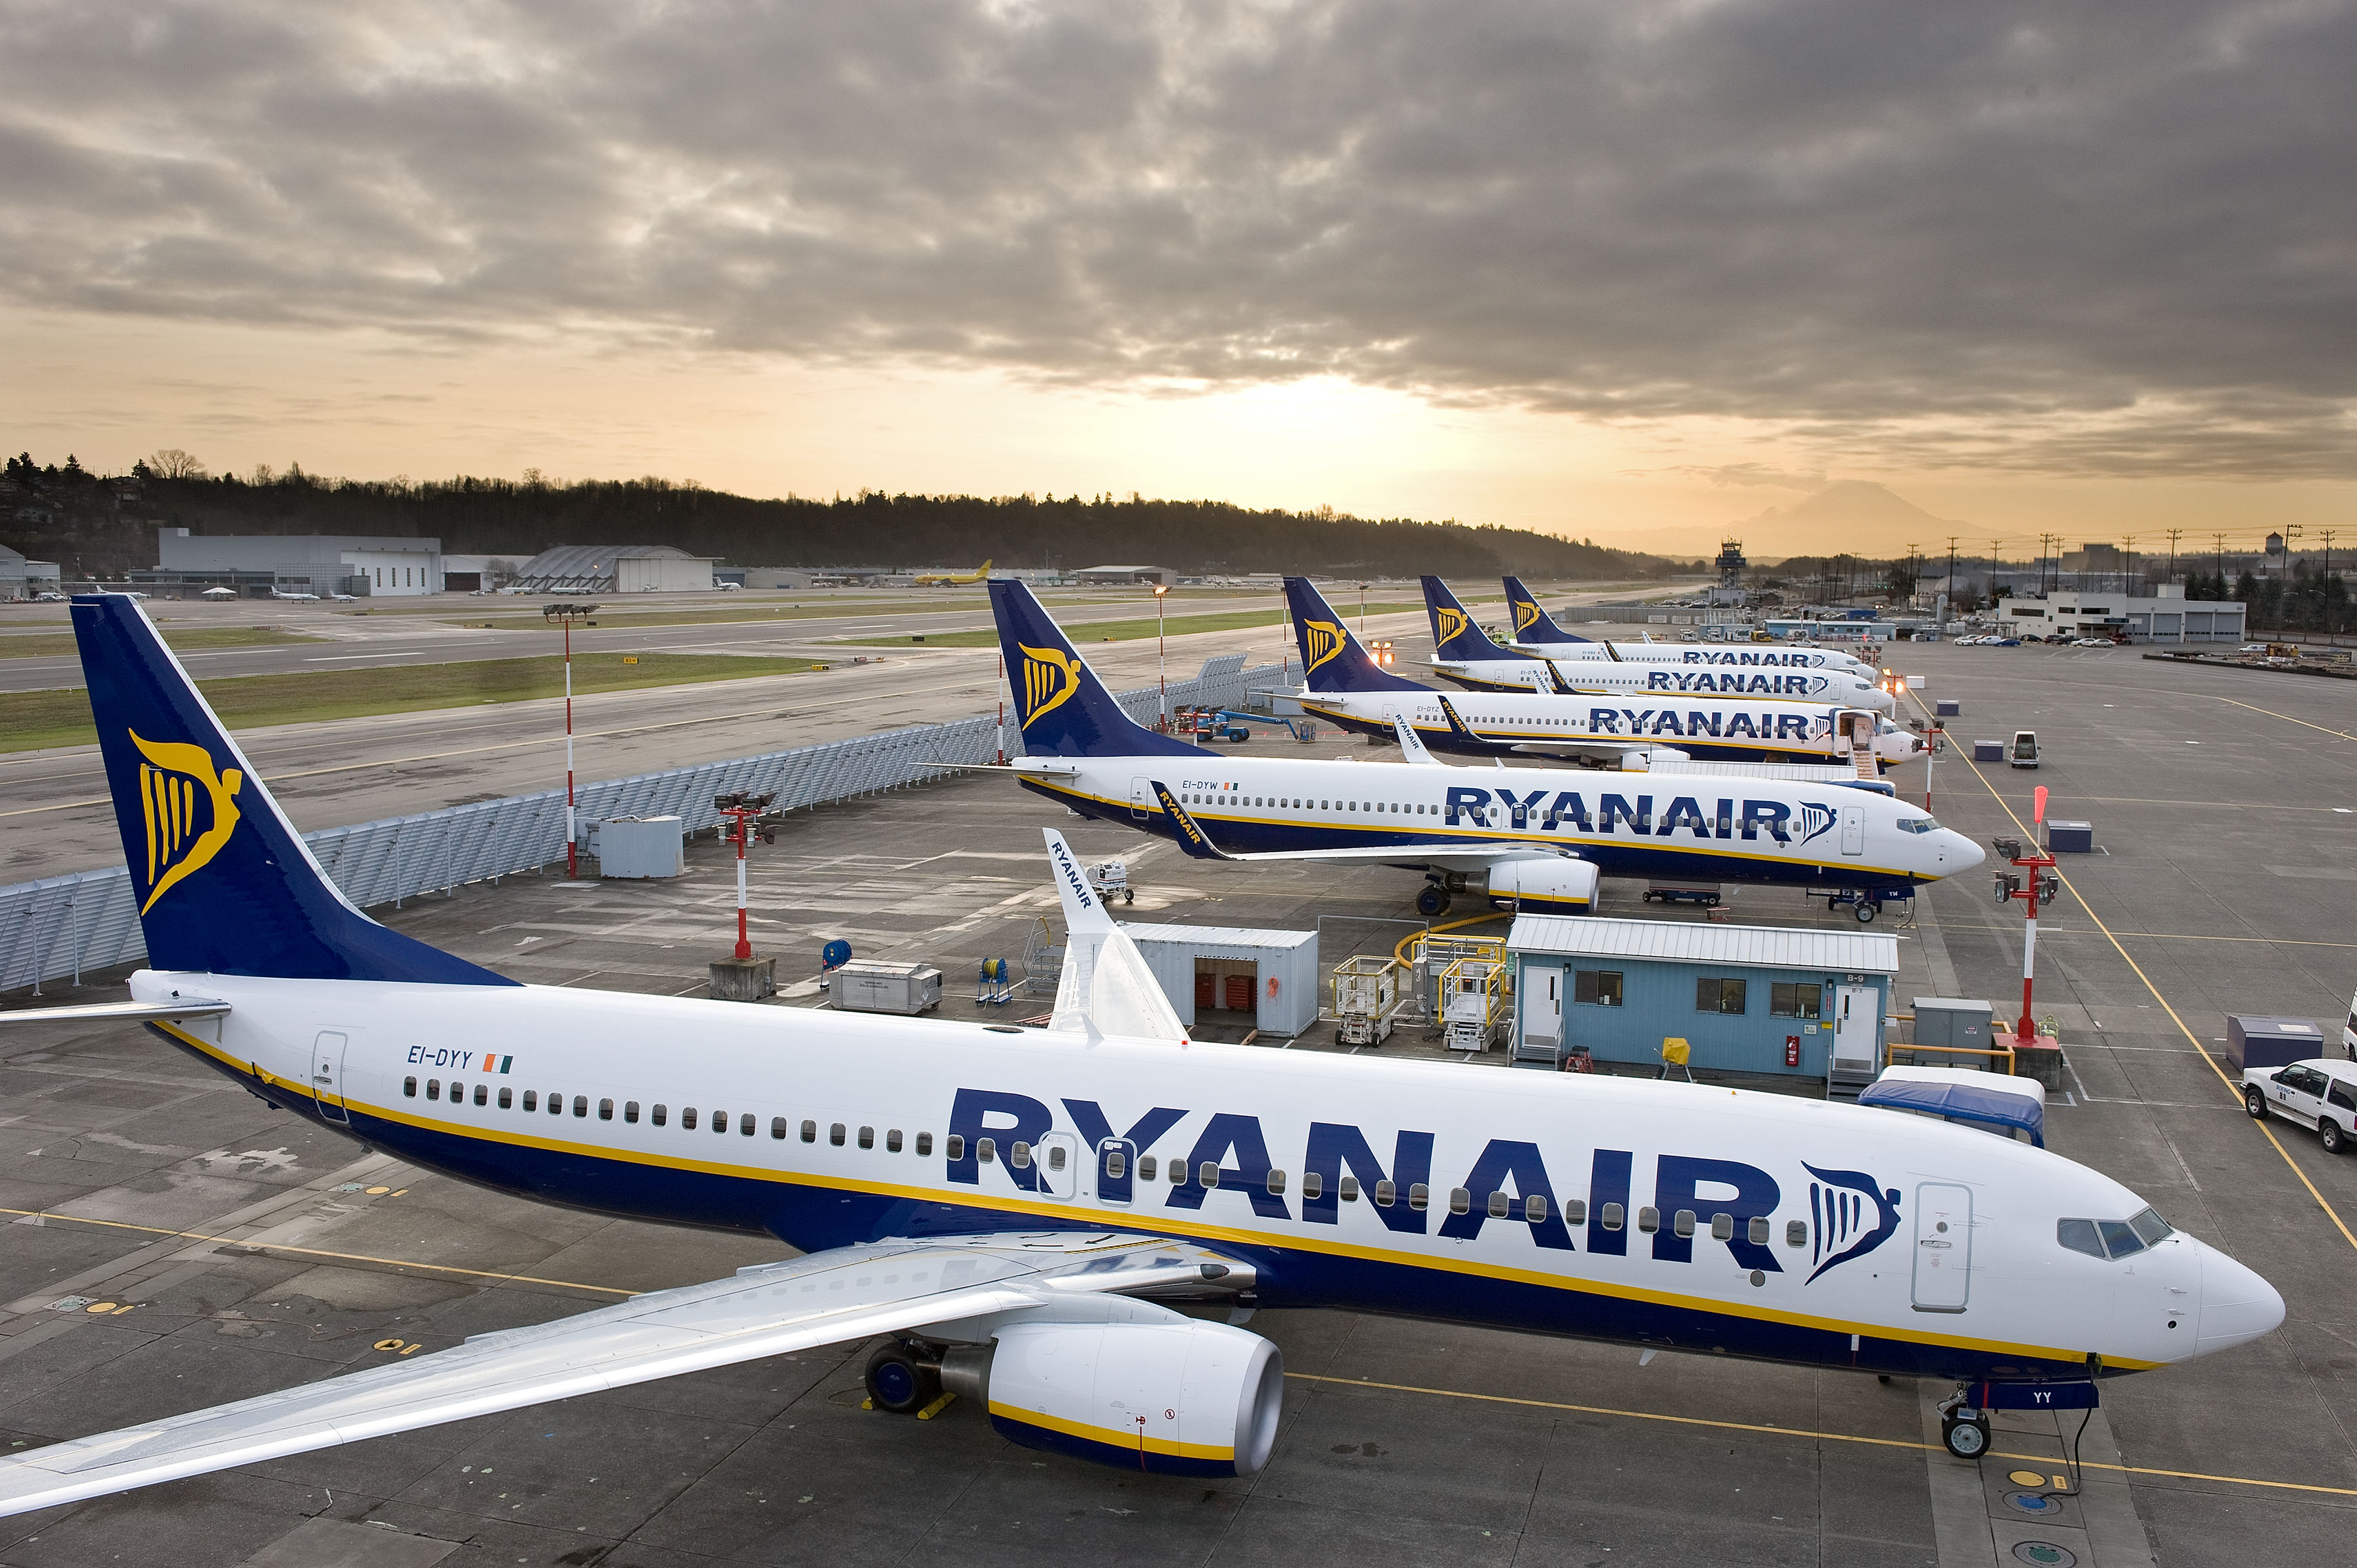 Ryanair Busca Incorporar 200 Nuevos Ingenieros